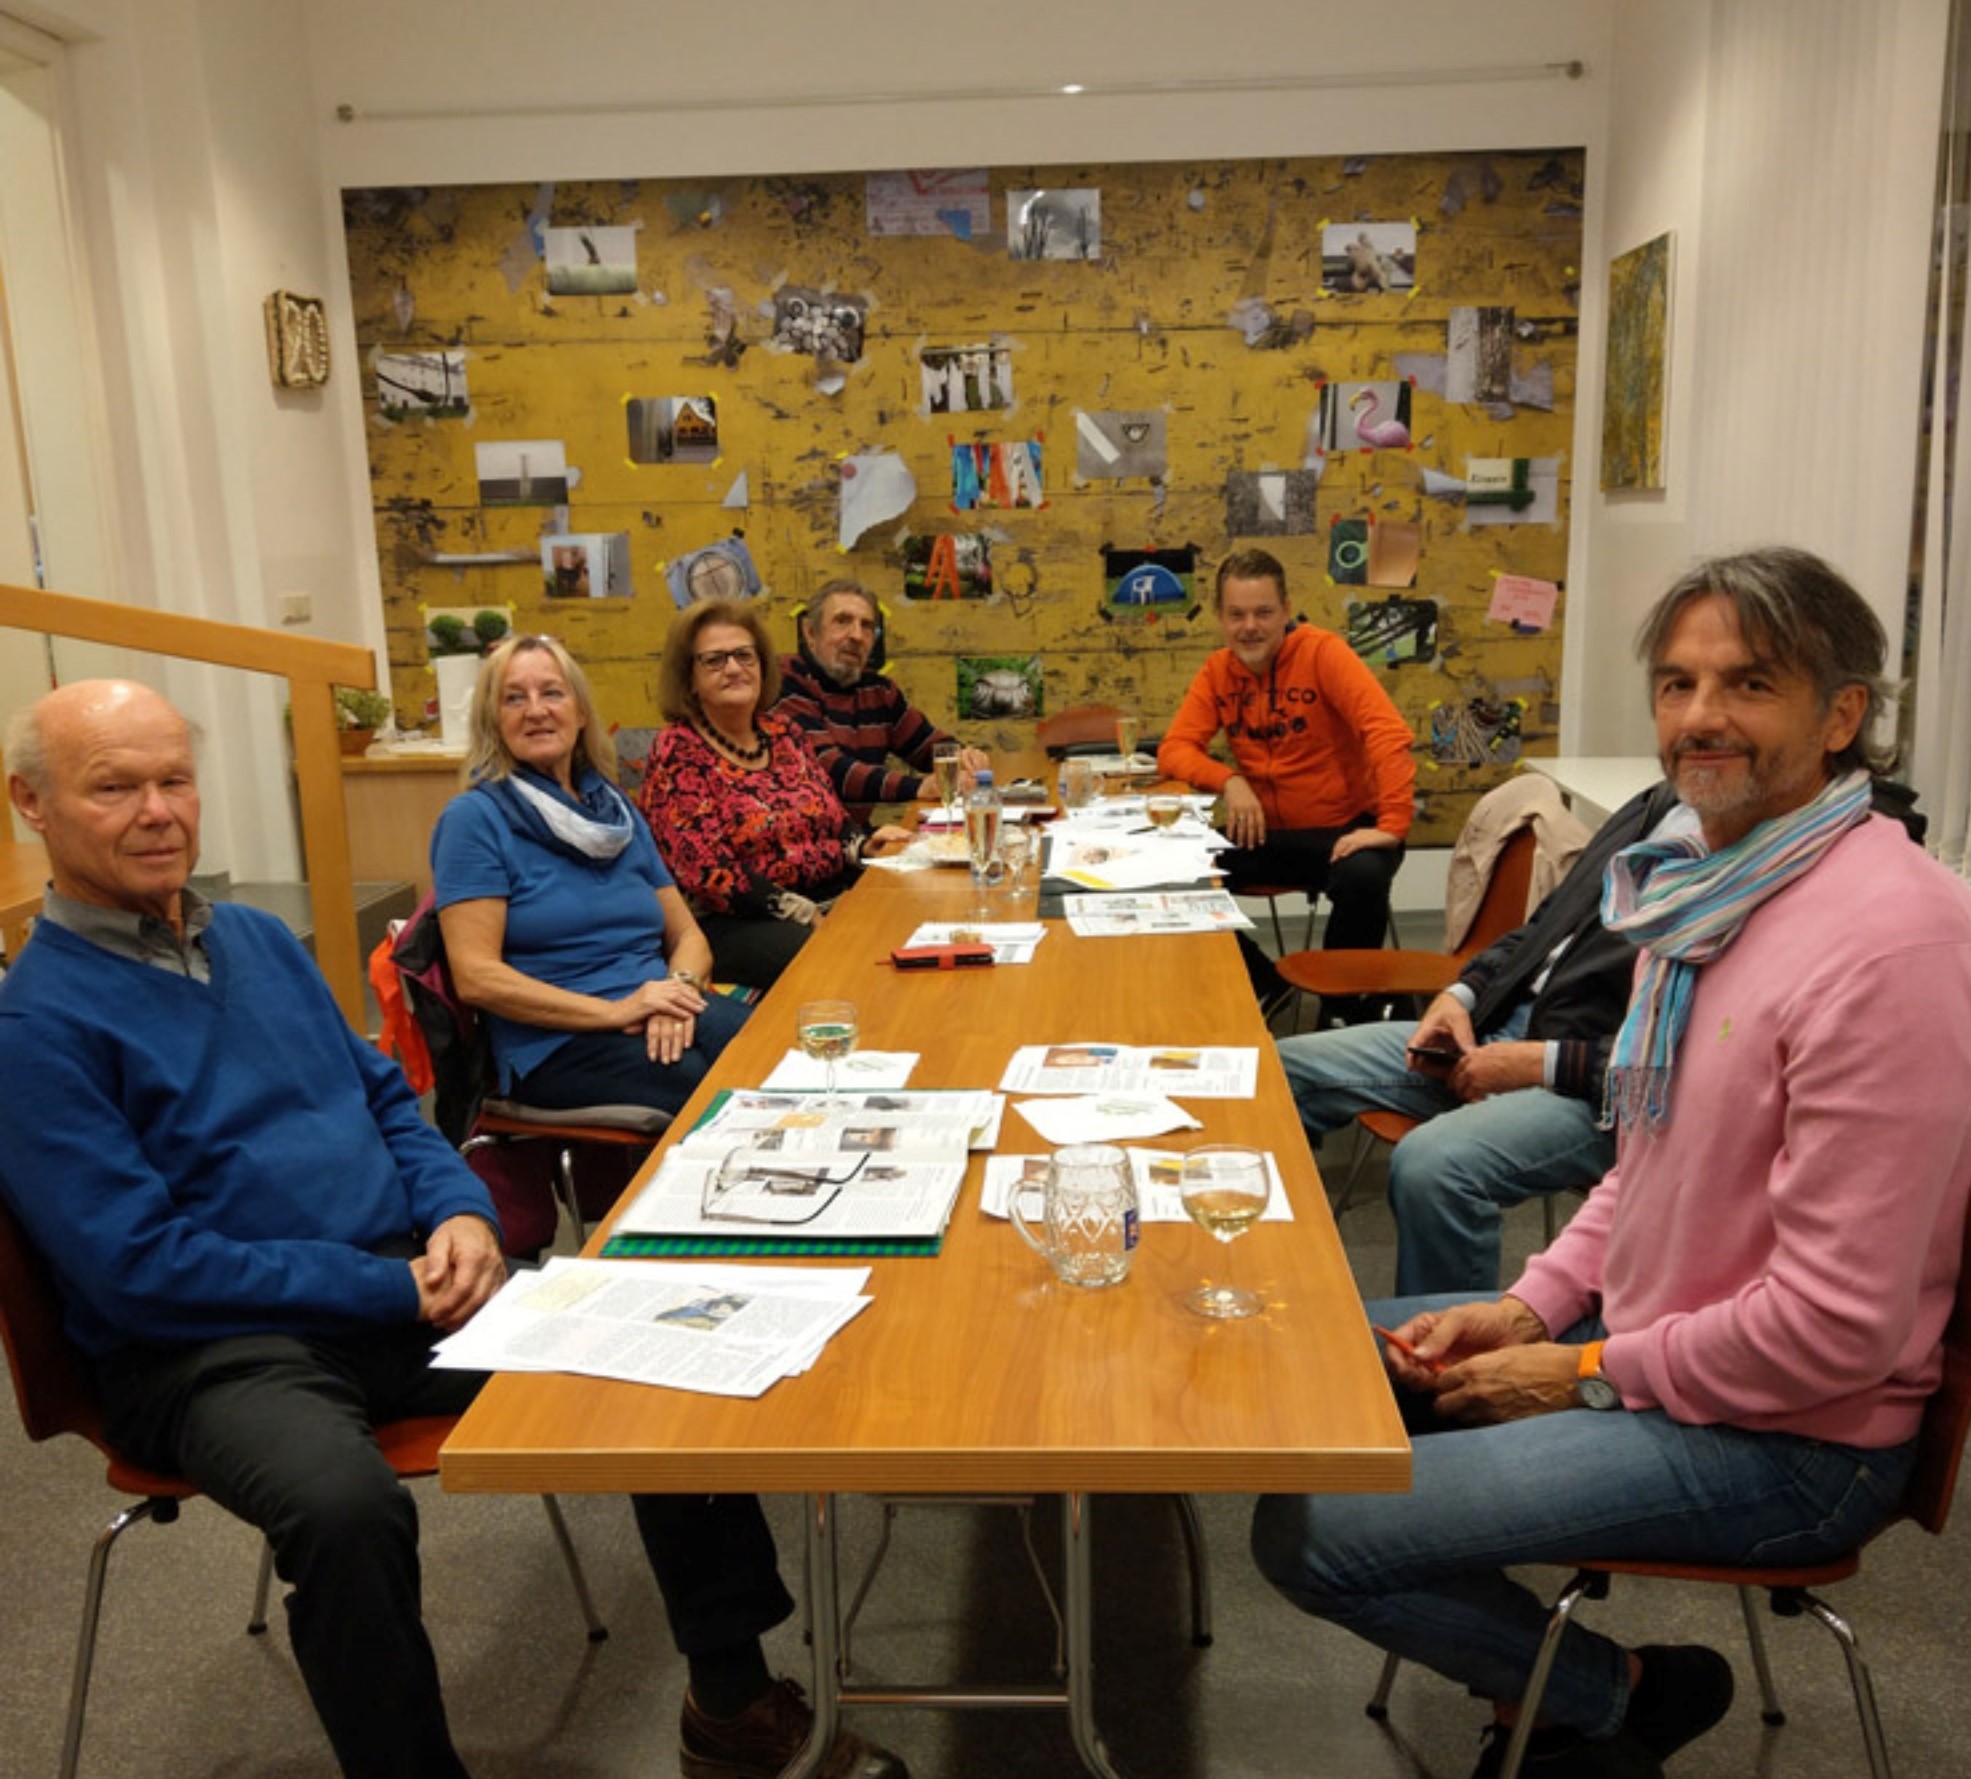 Redaktionssitzung der Stadtteiilzeitung; Sieben Leute sitzen um einen länglichen Tisch mit Notizen verteilt